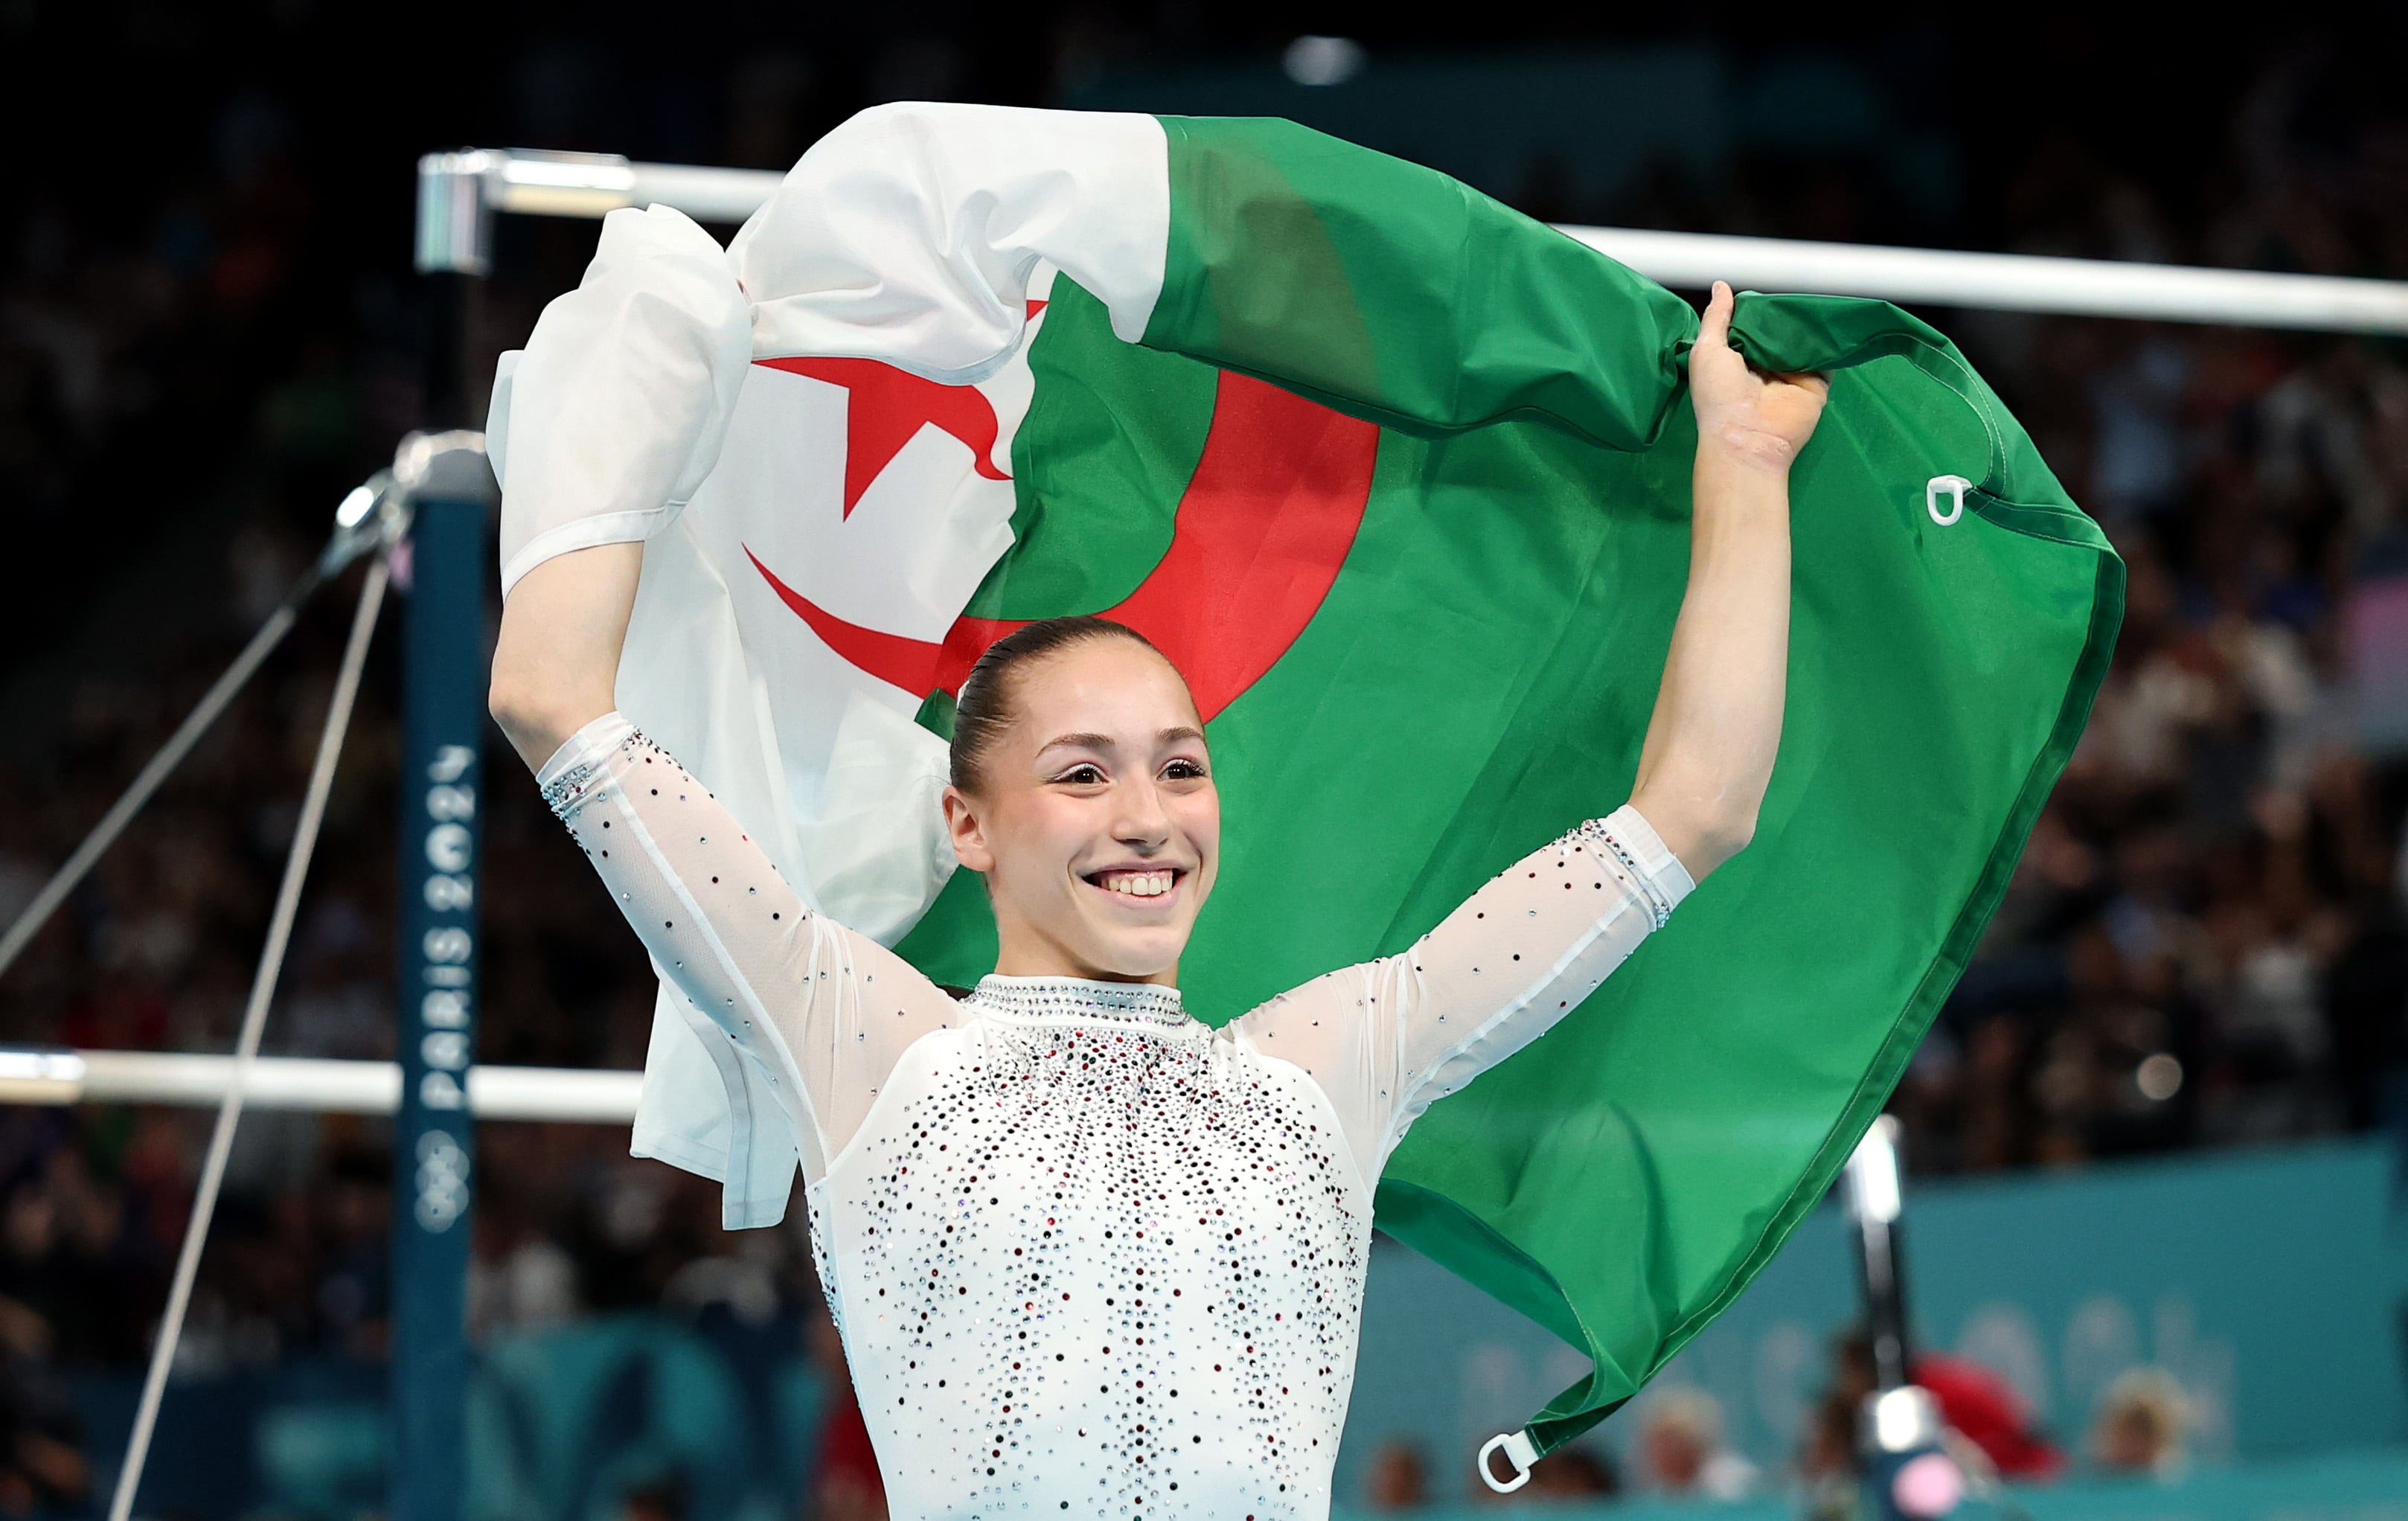 La emotiva historia de Kaylia Nemour: la argelina de 17 años vetada por Francia que ganó un oro histórico para África